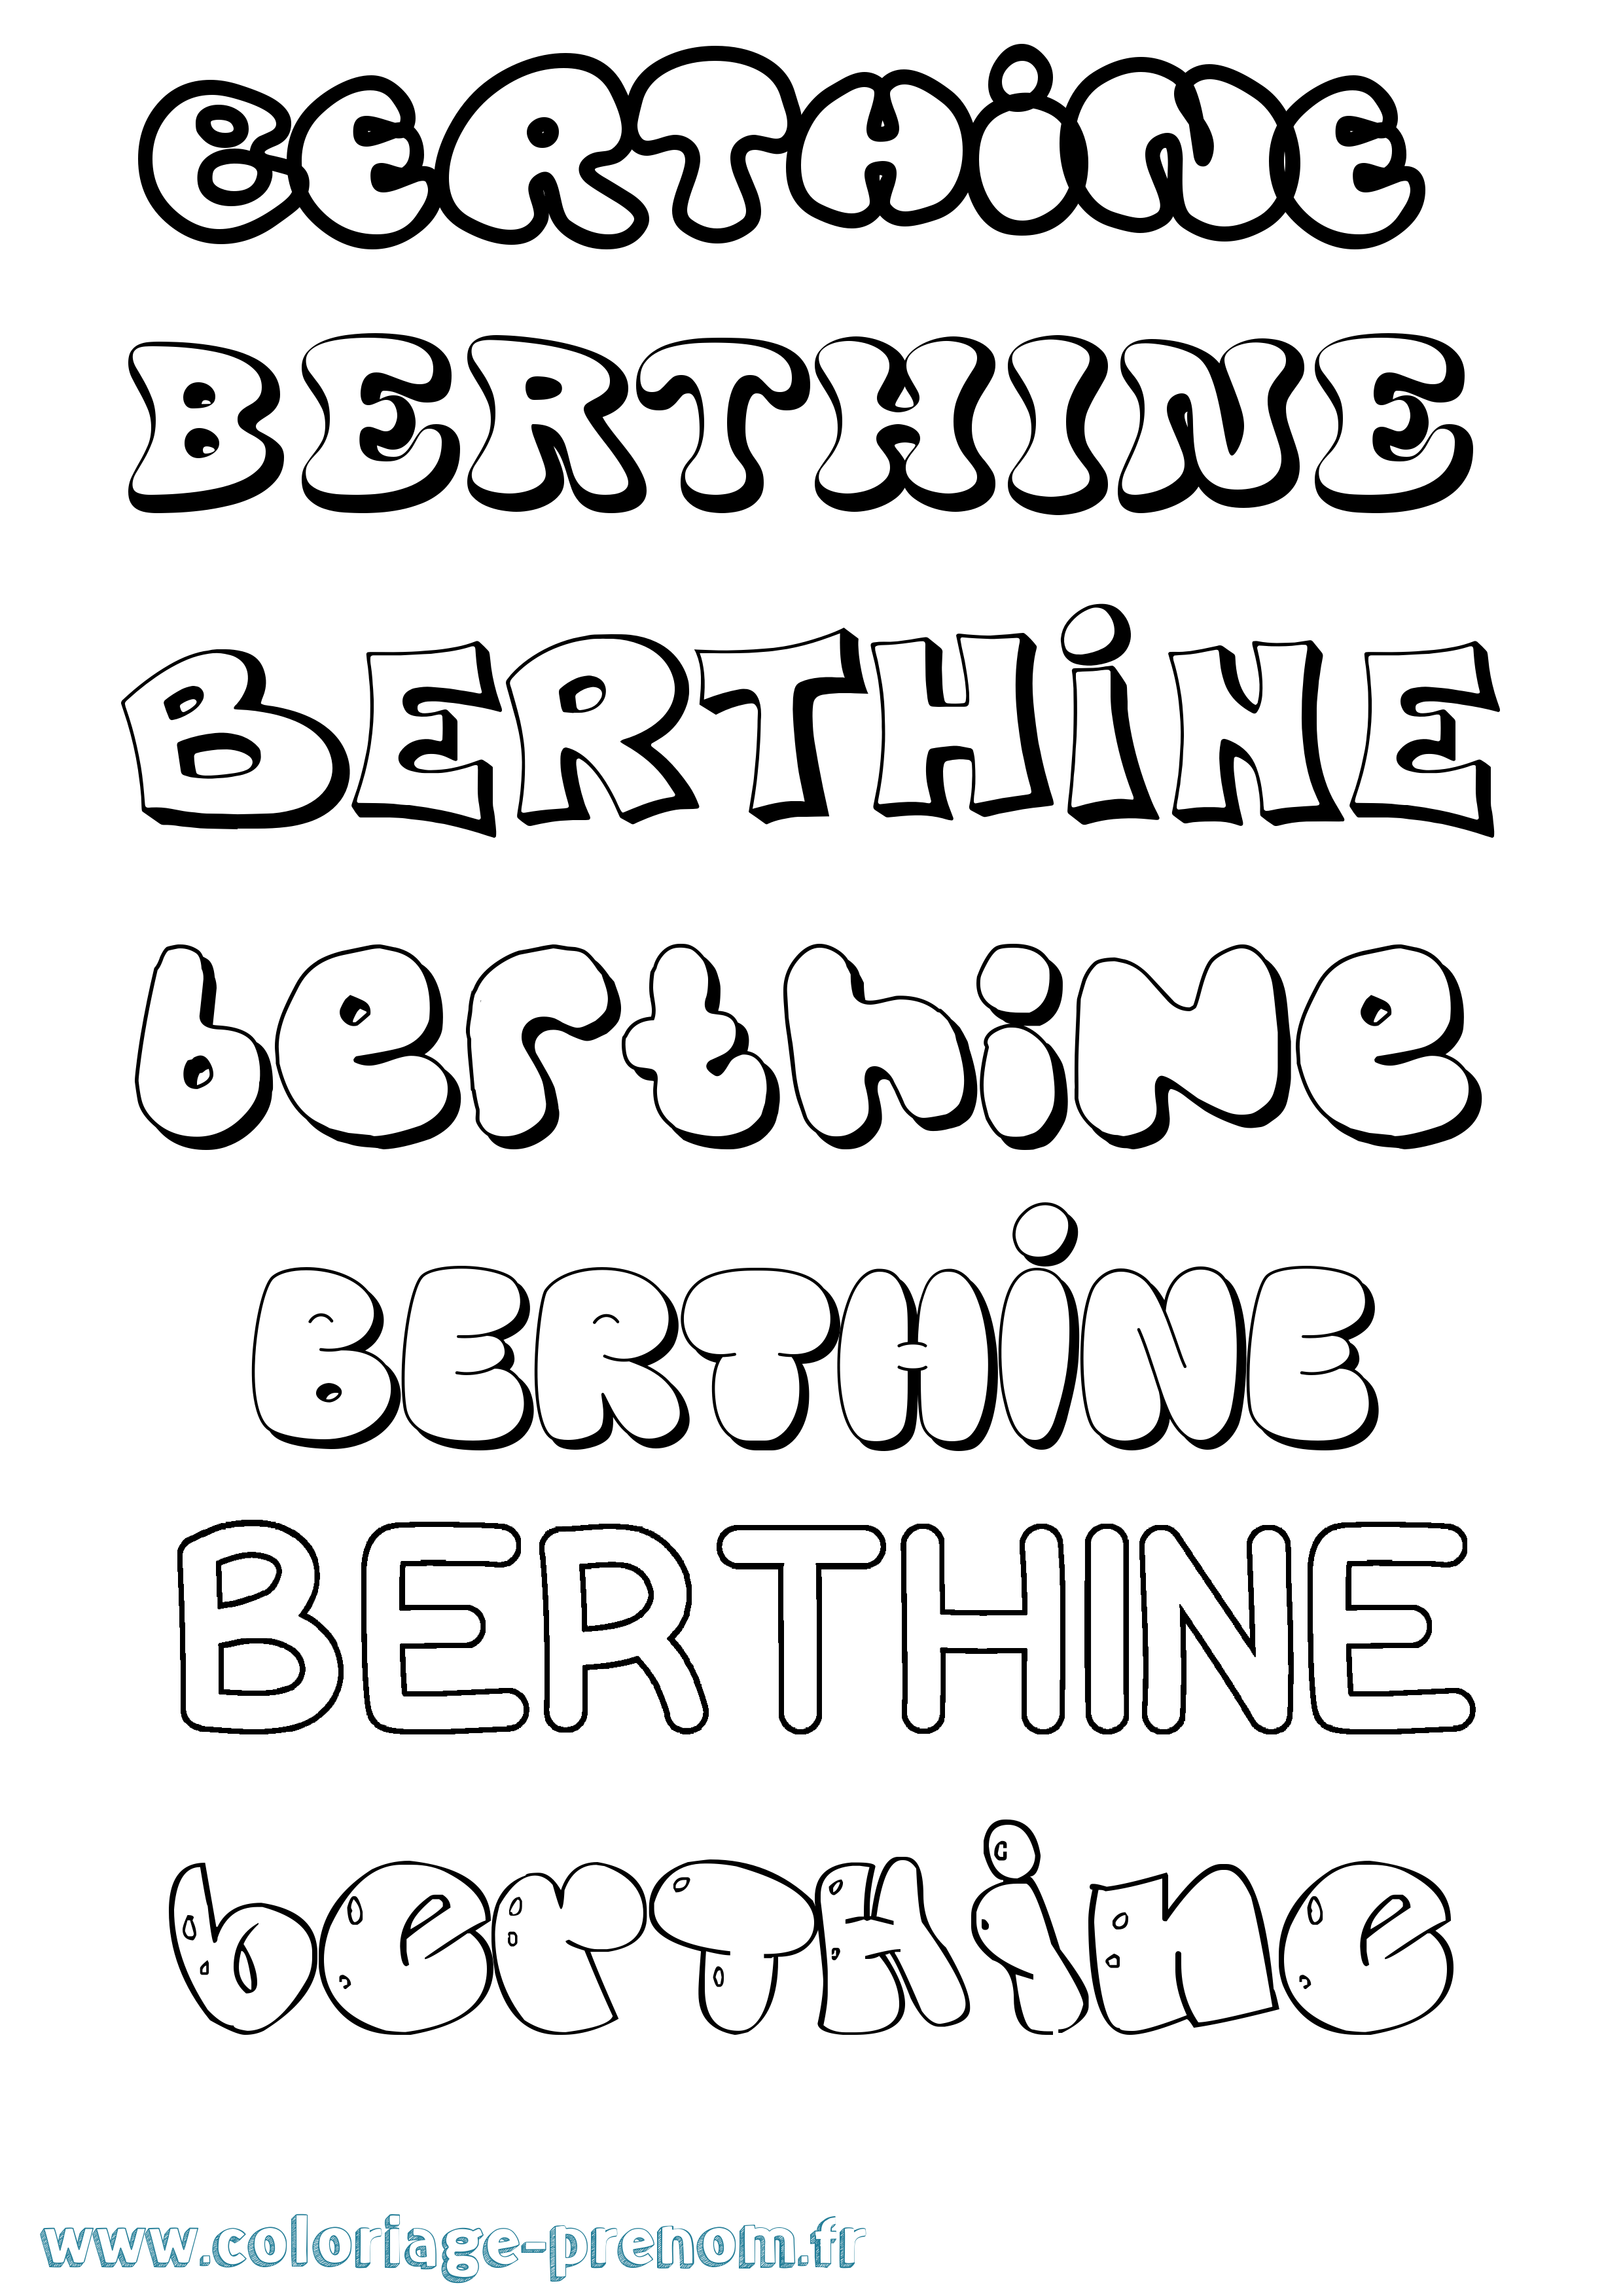 Coloriage prénom Berthine Bubble